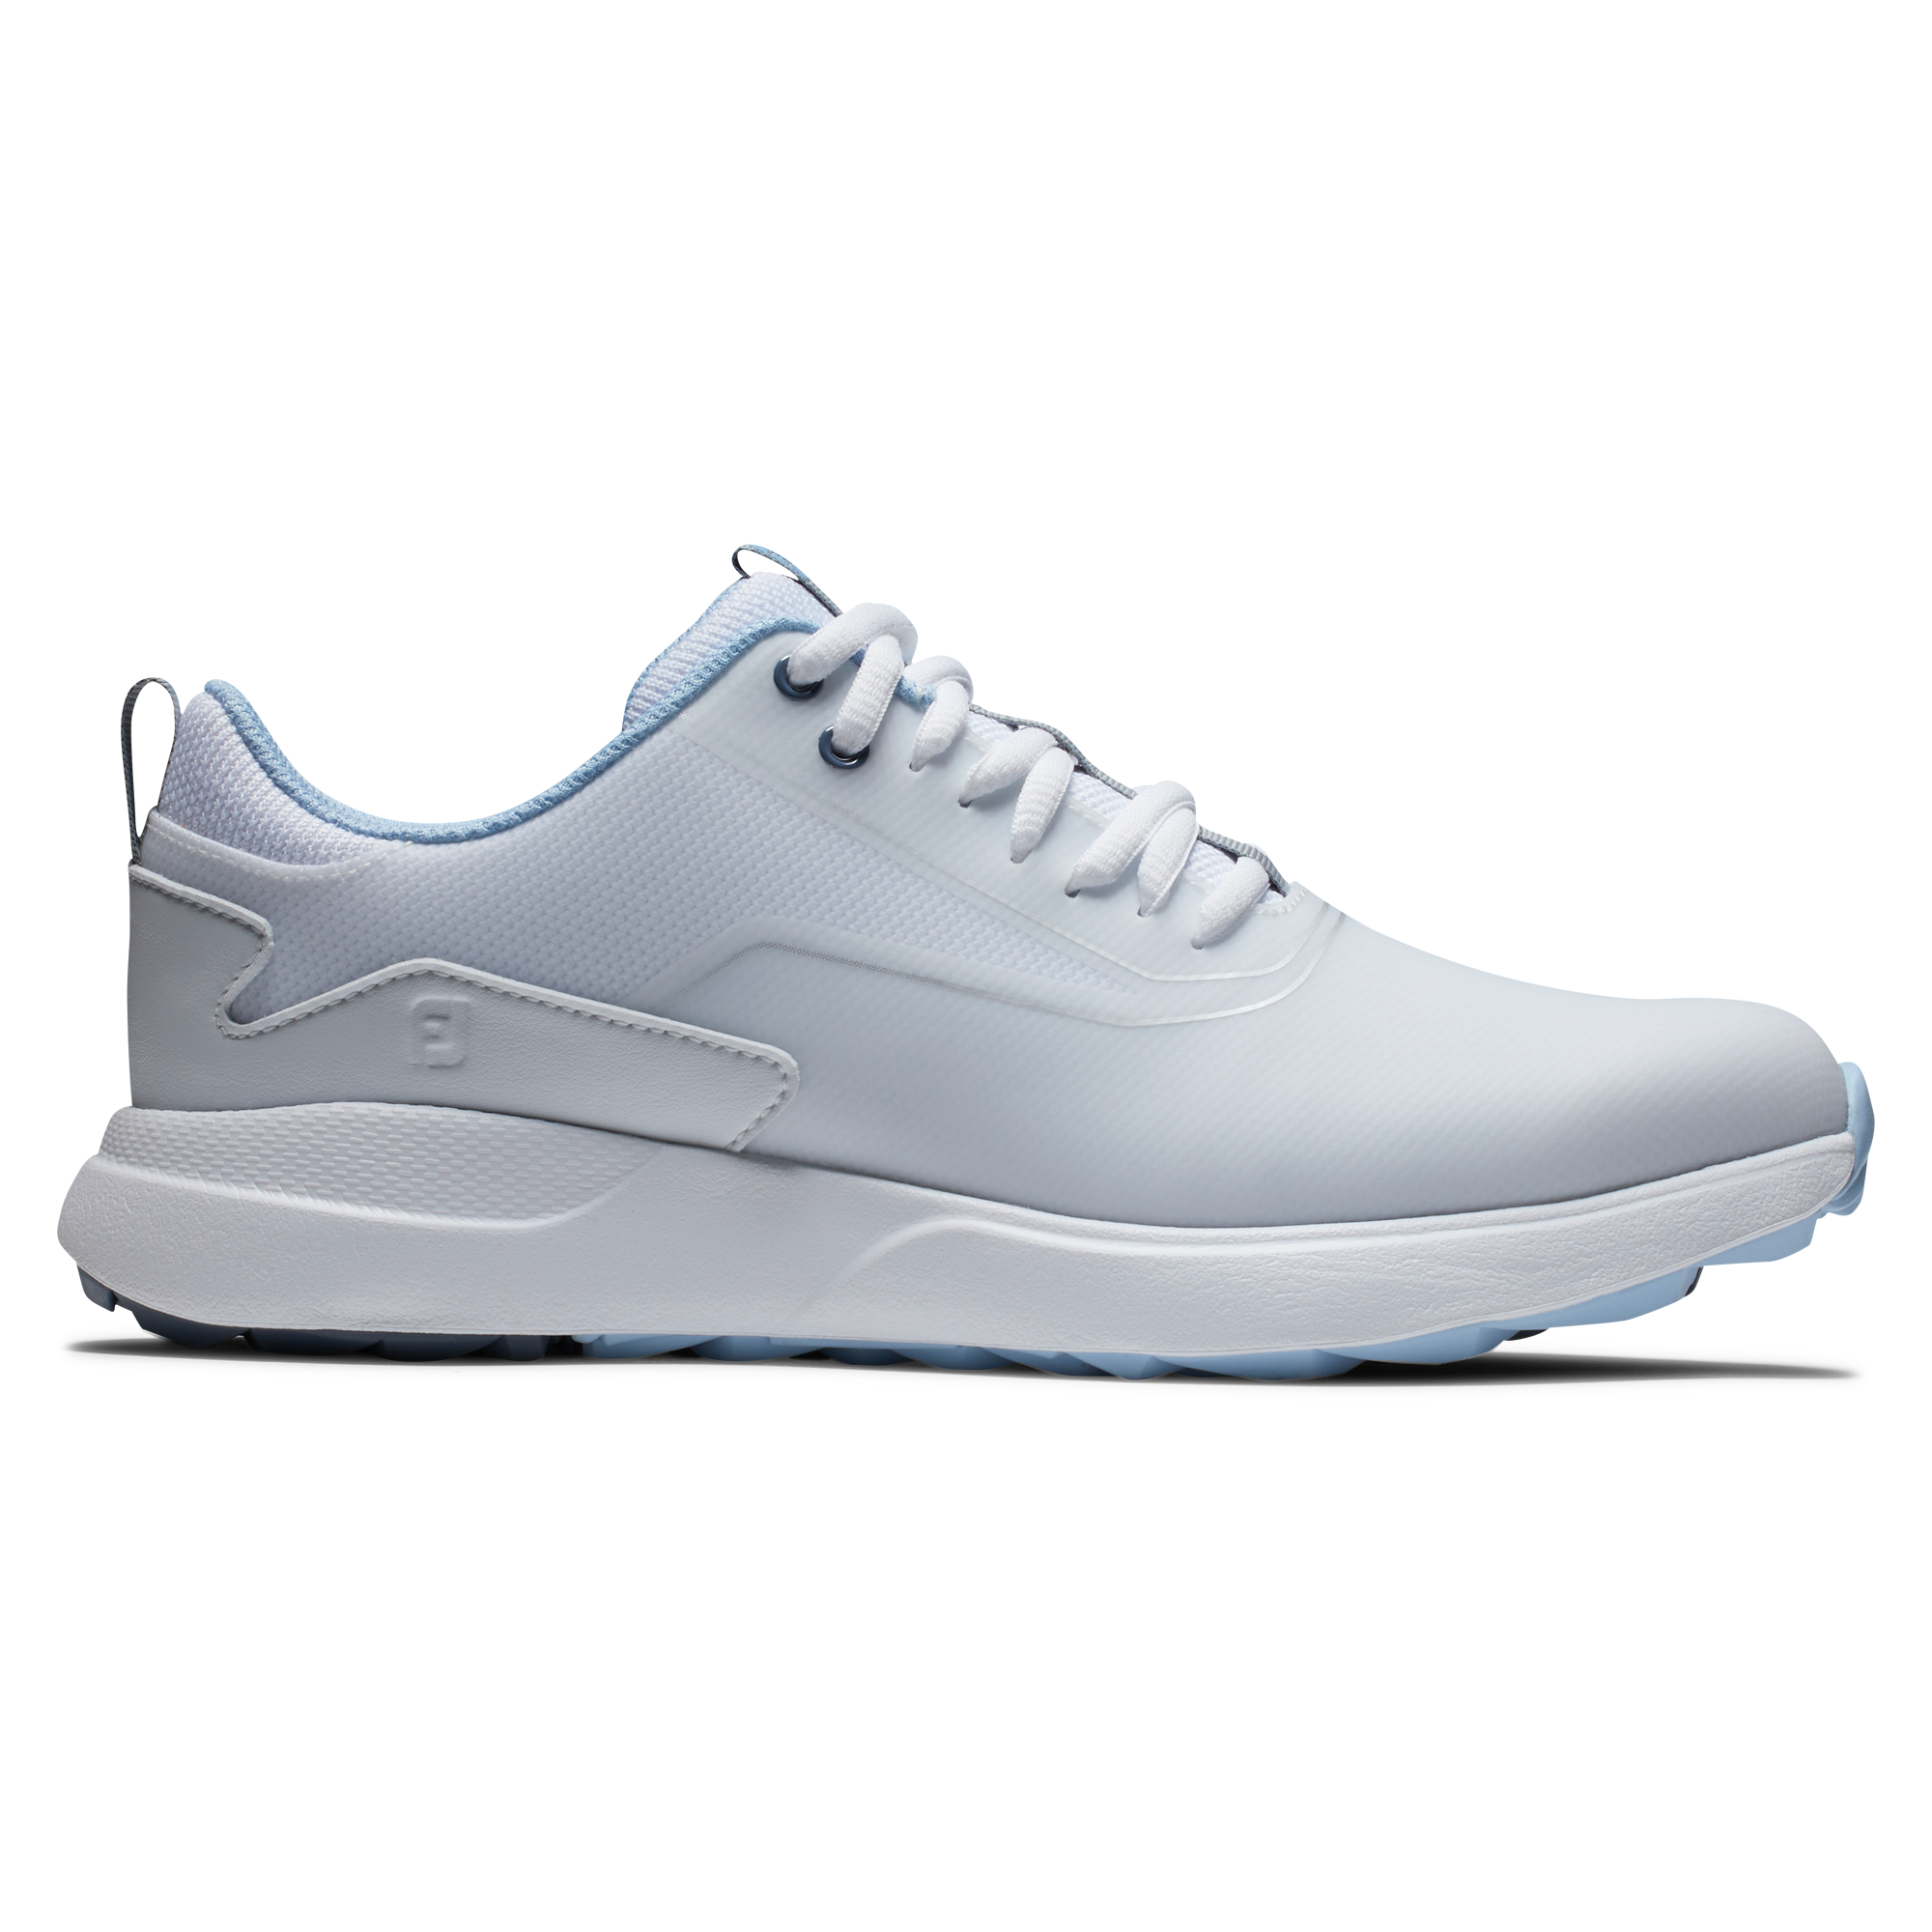 FootJoy Performa dámské golfové boty, bílé/světle modré, vel. 4,5 UK